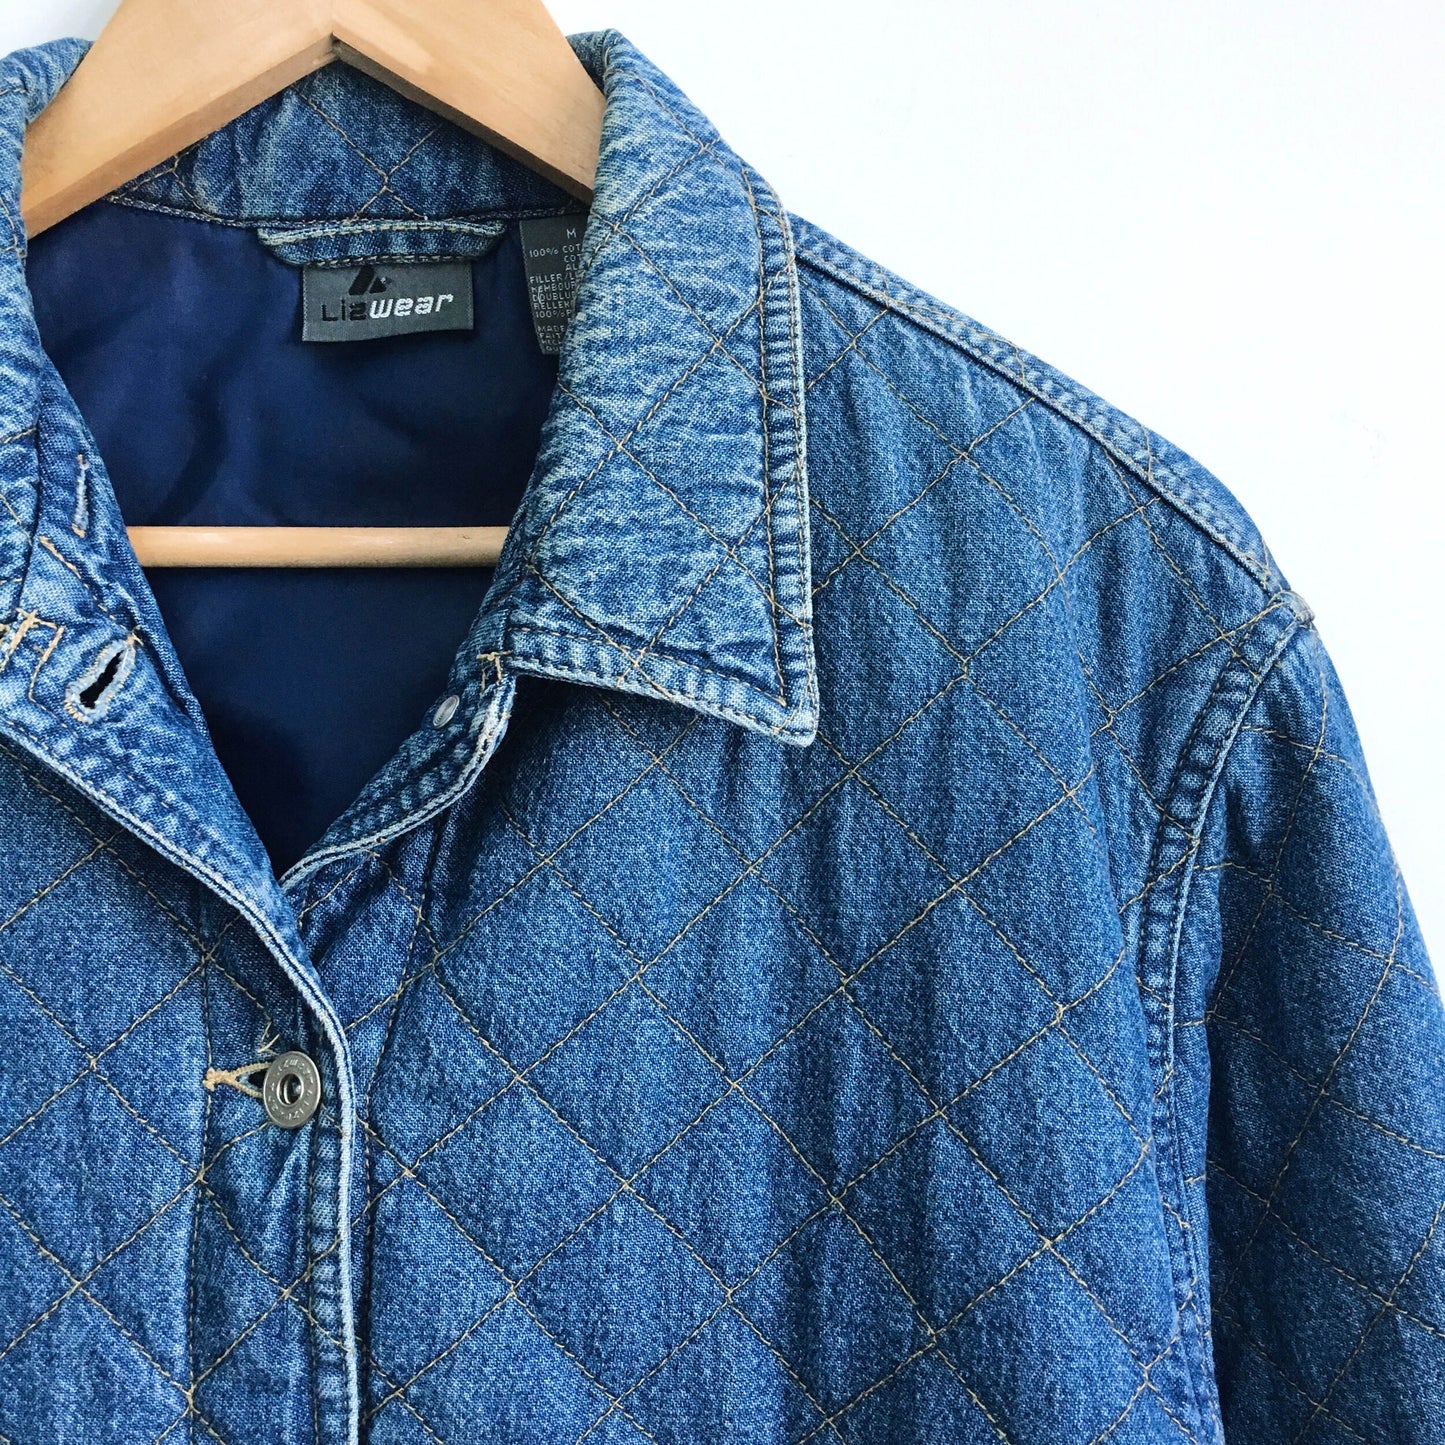 Vintage LizWear quilted denim jacket - size Medium